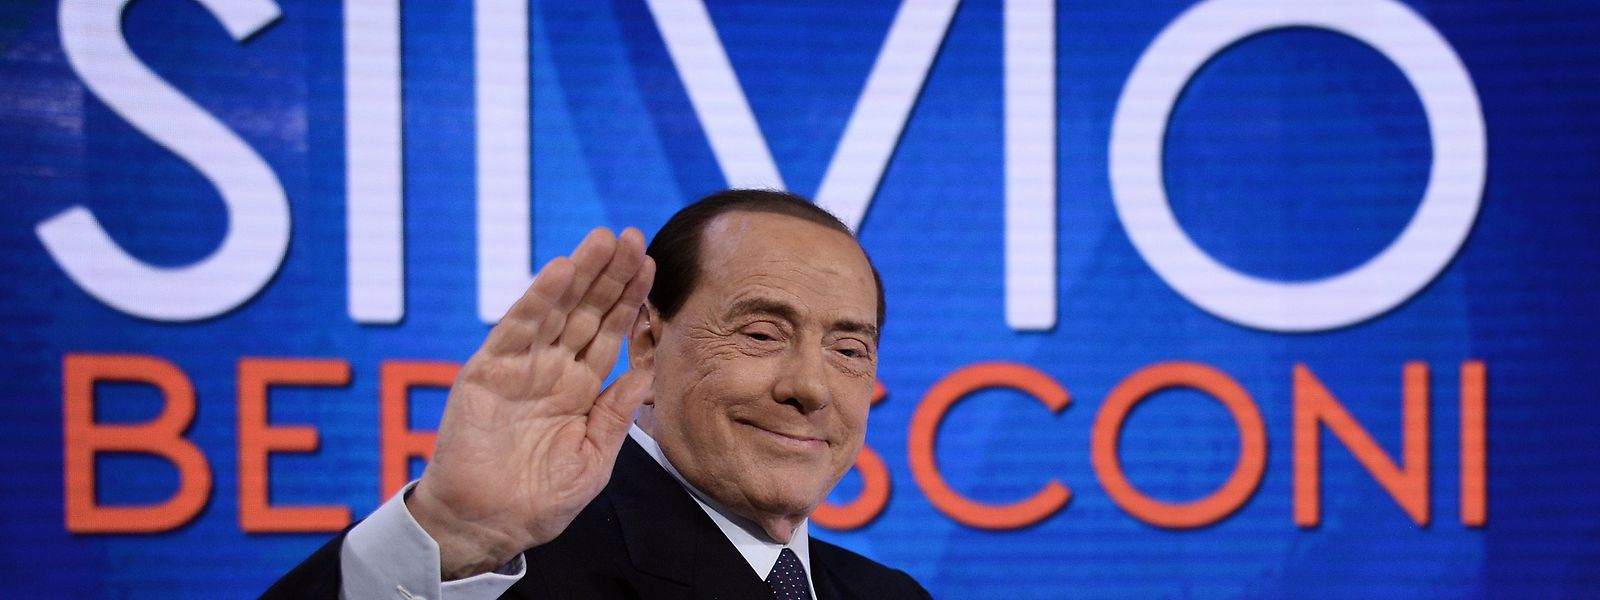 Silvio Berlusconi, ehemaliger Ministerpräsident Italiens, will wieder in die Parlamentskammer.